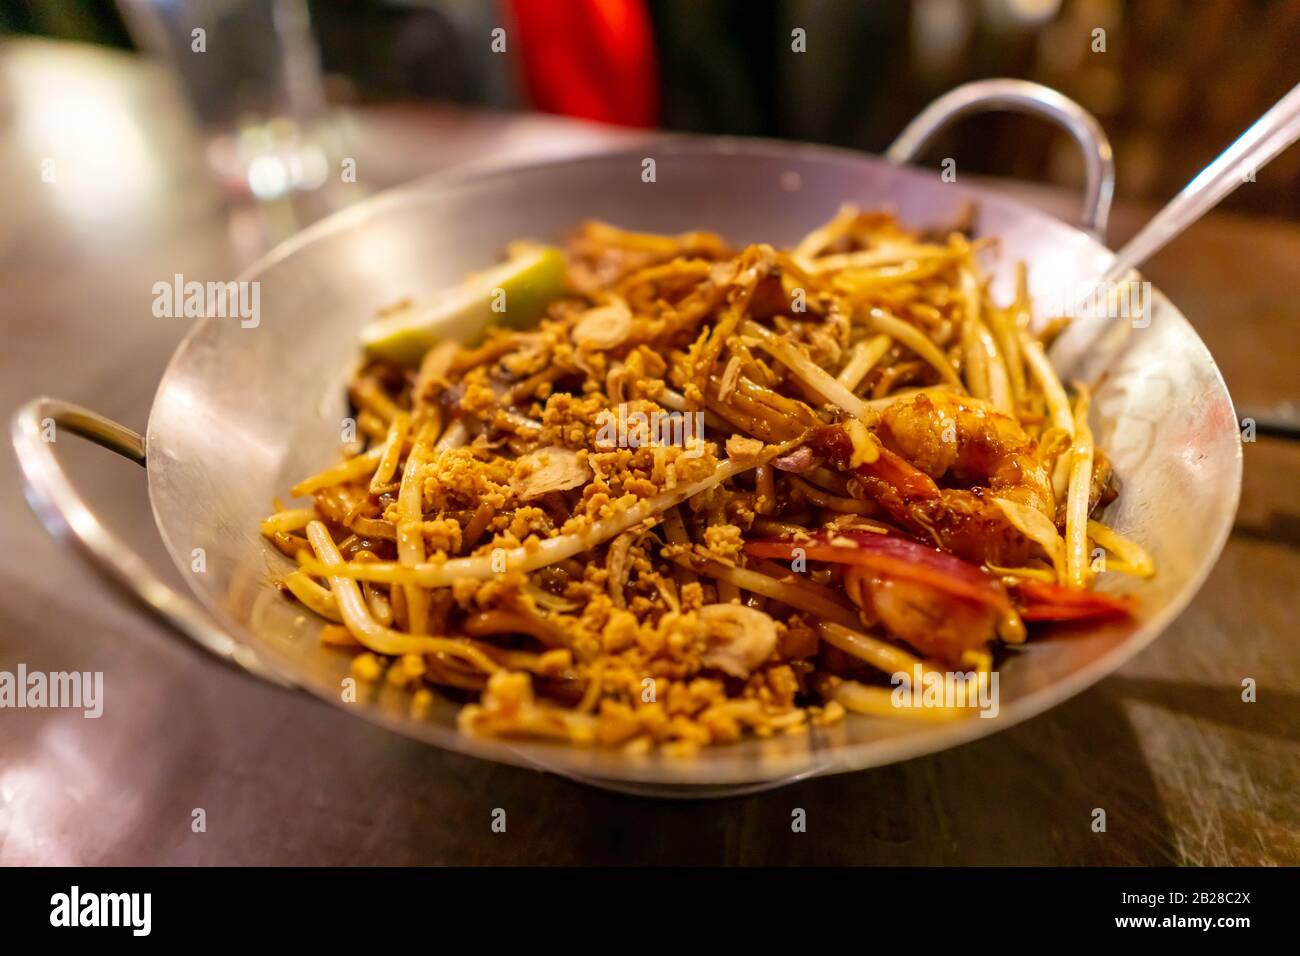 Malaysian cuisine, Indian Mee Goreng Stock Photo